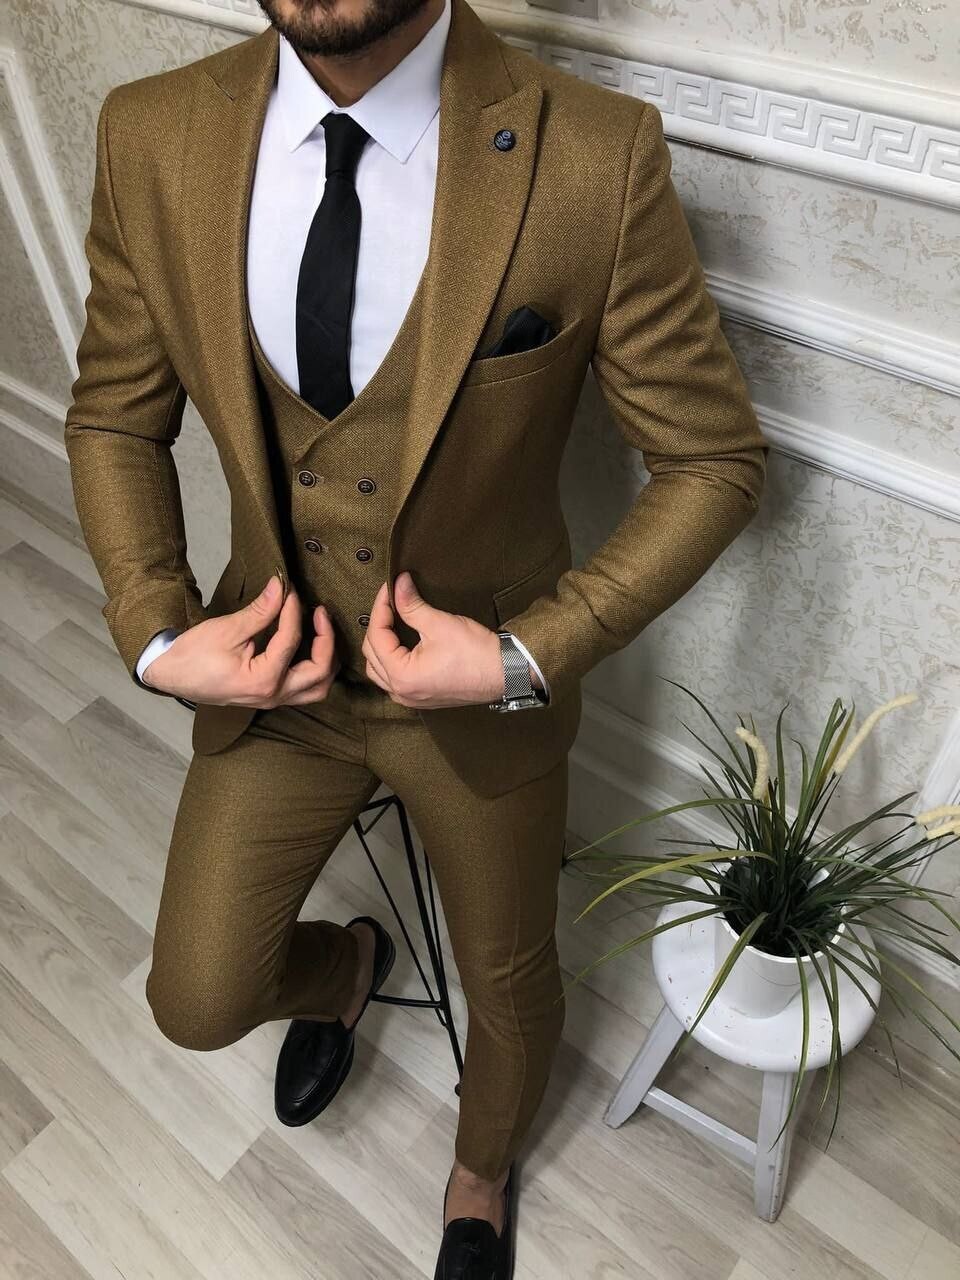 Formal men's suit